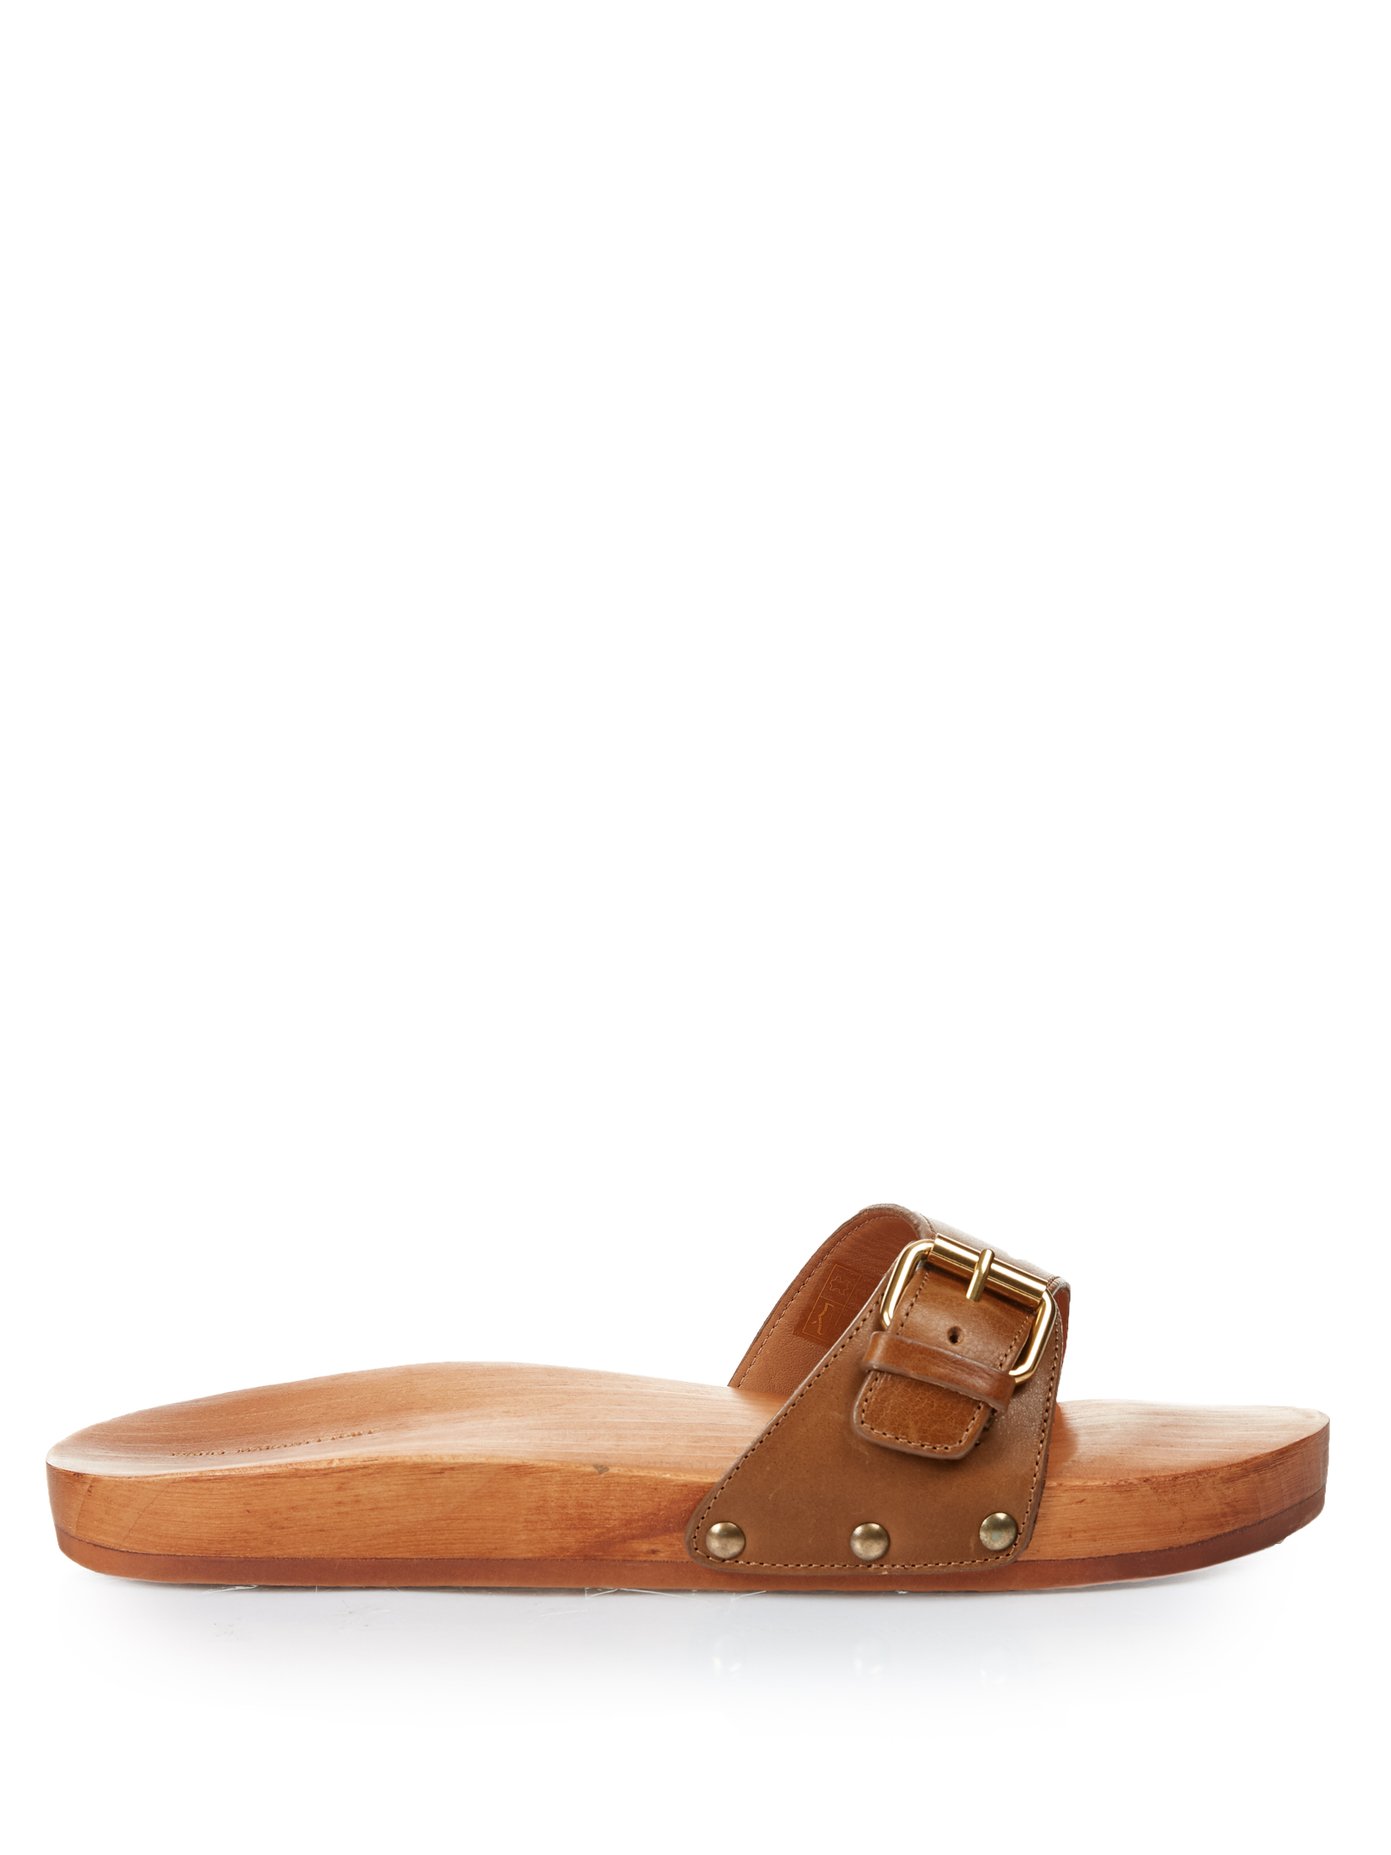 wooden sandal